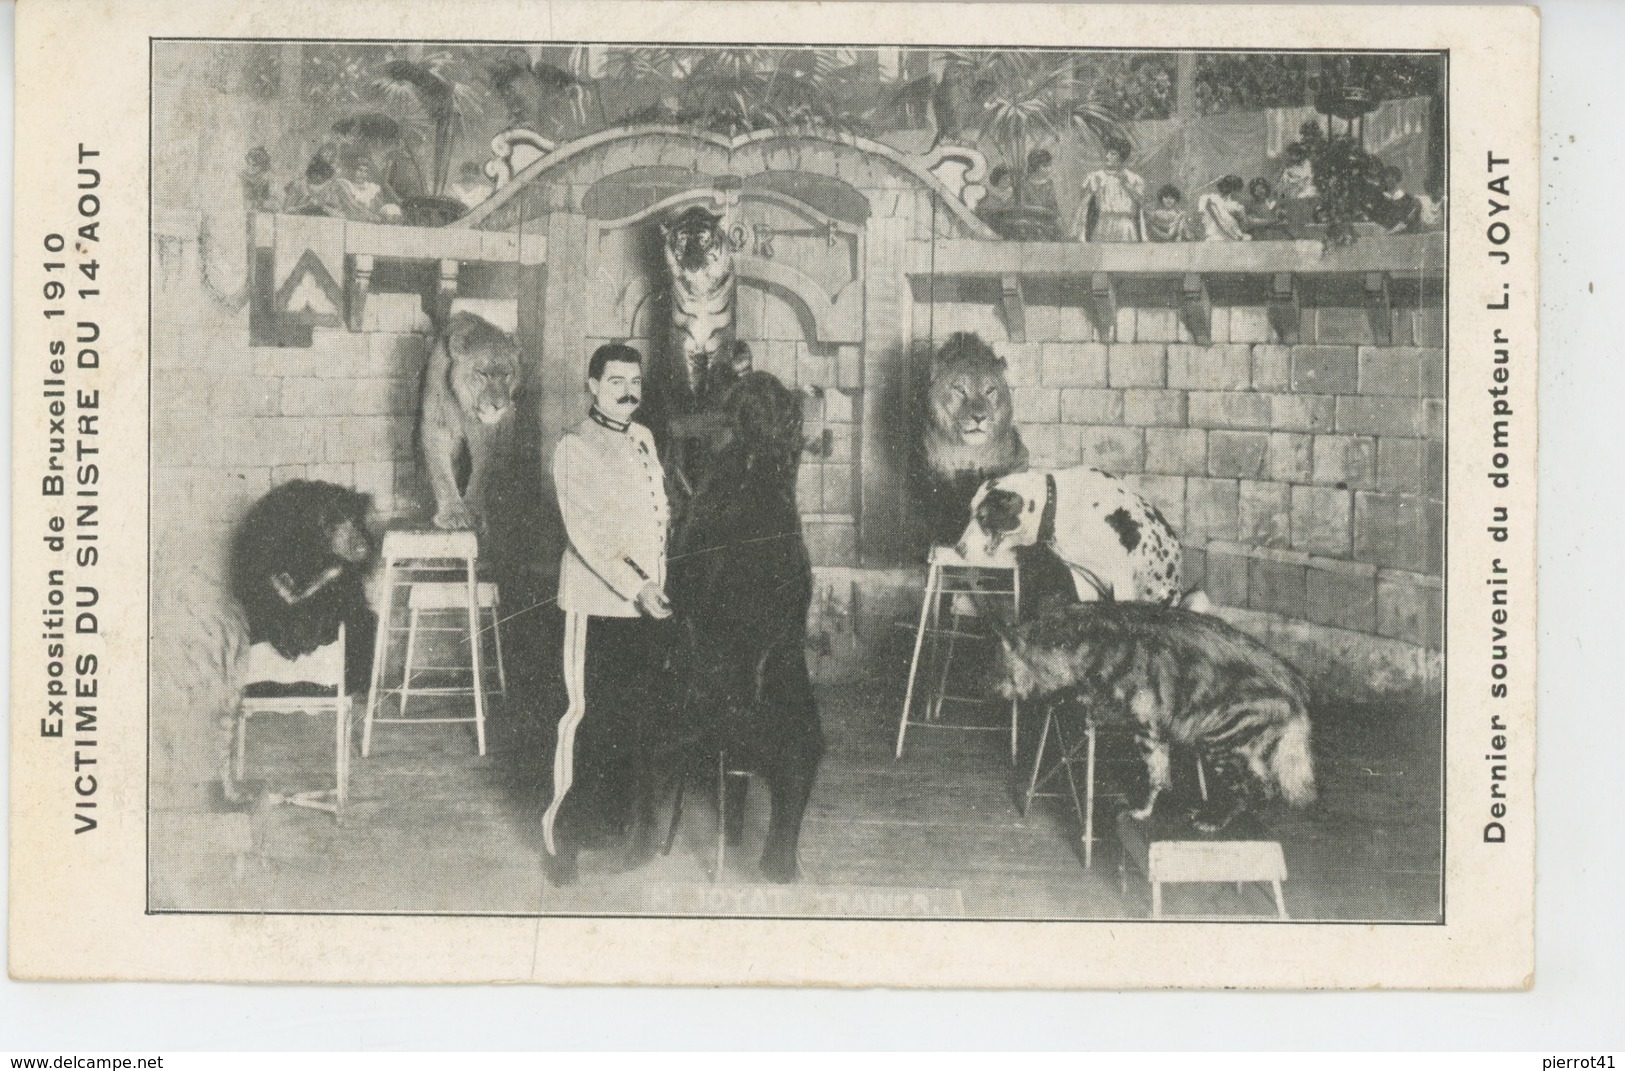 SPECTACLE - CIRQUE - EXPOSITION DE BRUXELLES 1910 - Victimes Du Sinistre - Dernier Souvenir Du Dompteur L. JOYAT - Circus